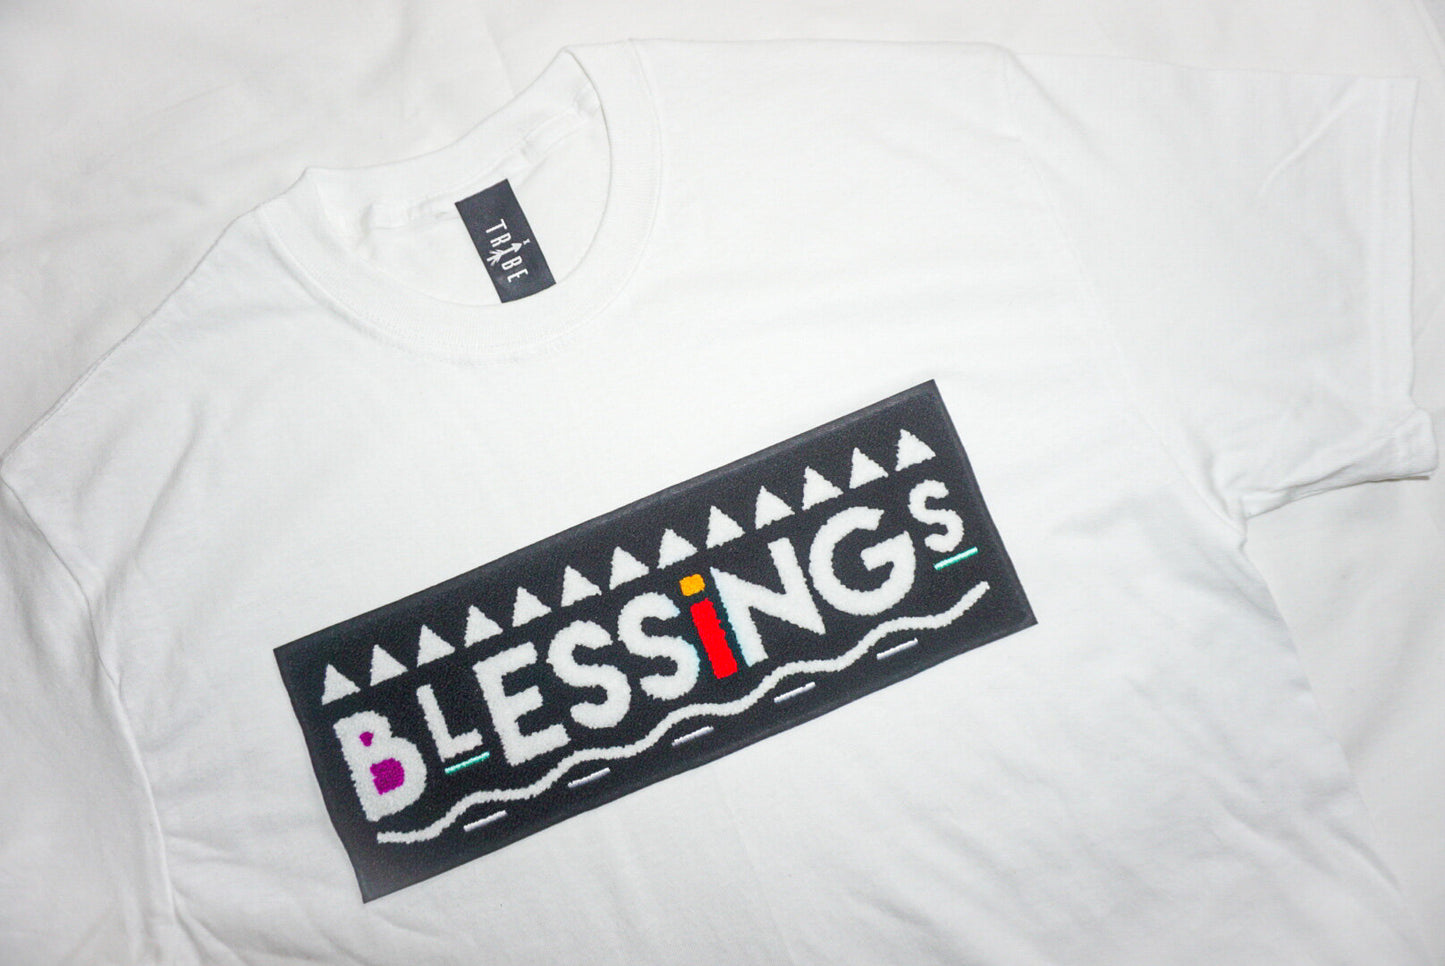 White “Blessings” Tee